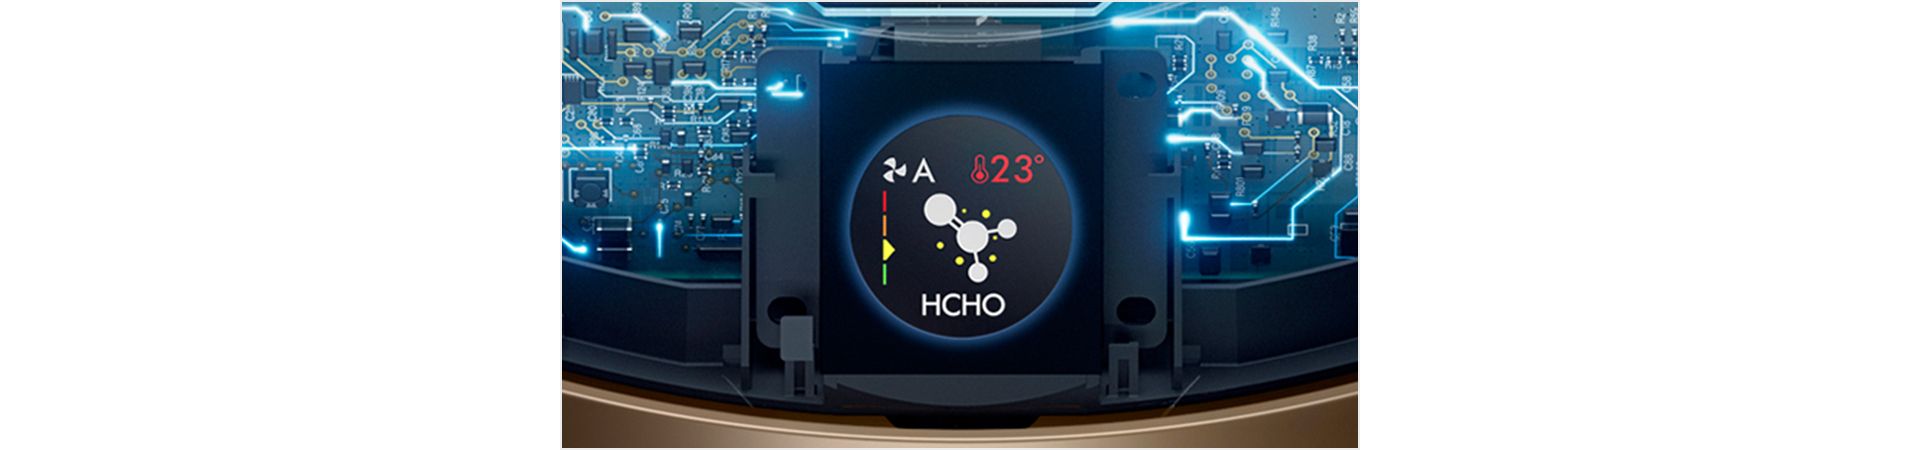 טכנולוגיית חישה פנימית וצג LCD המציג את איכות האוויר